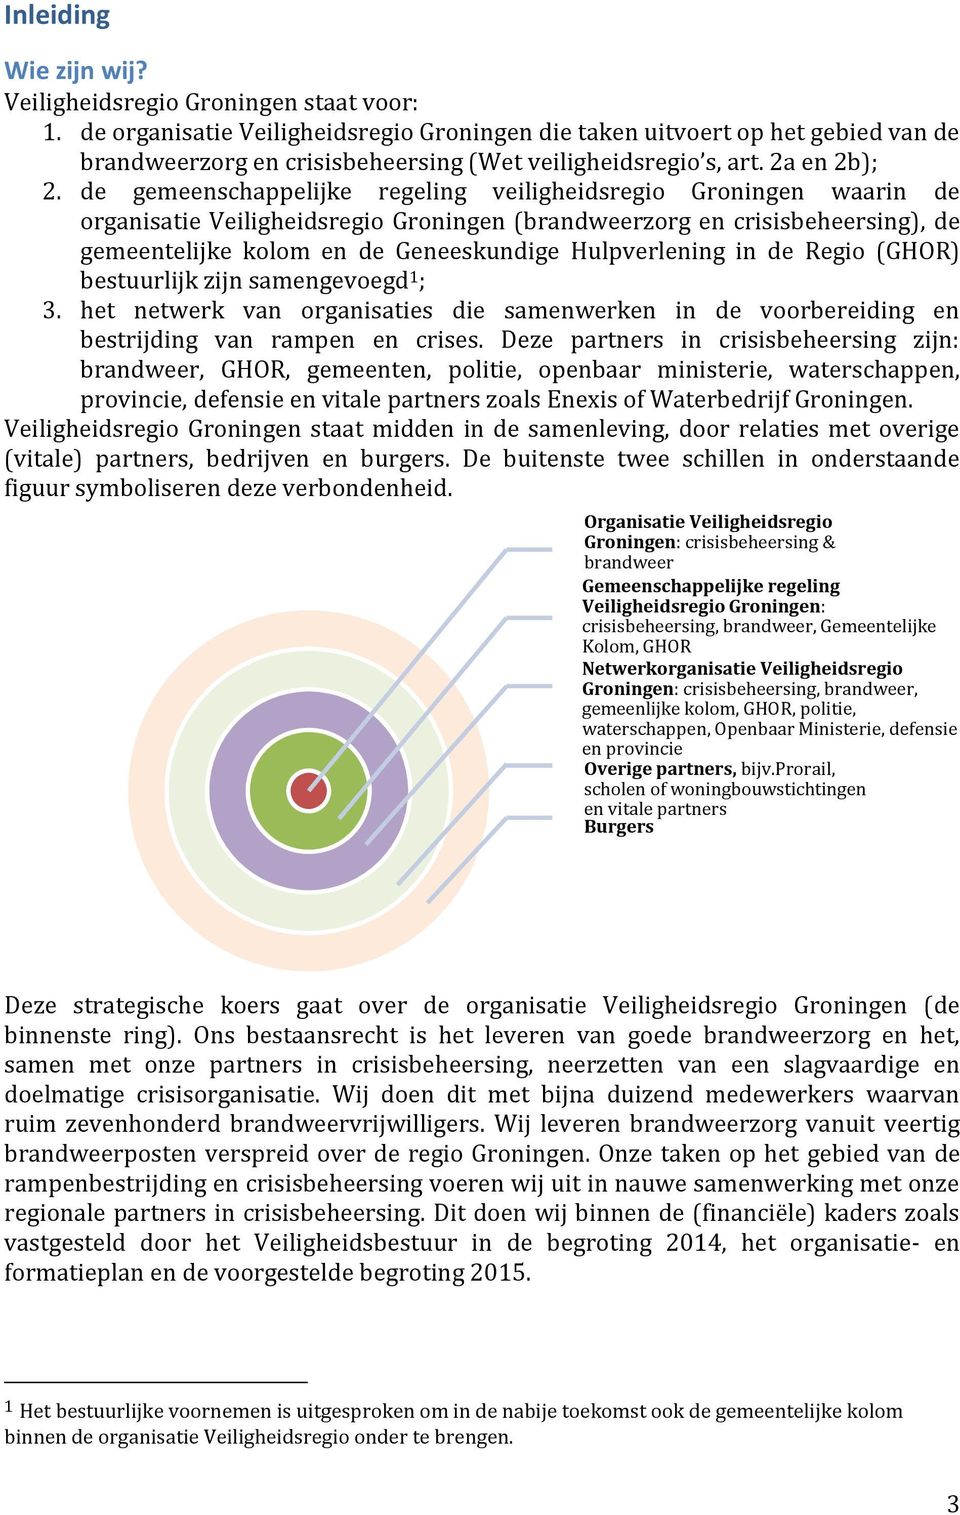 de gemeenschappelijke regeling veiligheidsregio Groningen waarin de organisatie Veiligheidsregio Groningen (brandweerzorg en crisisbeheersing), de gemeentelijke kolom en de Geneeskundige